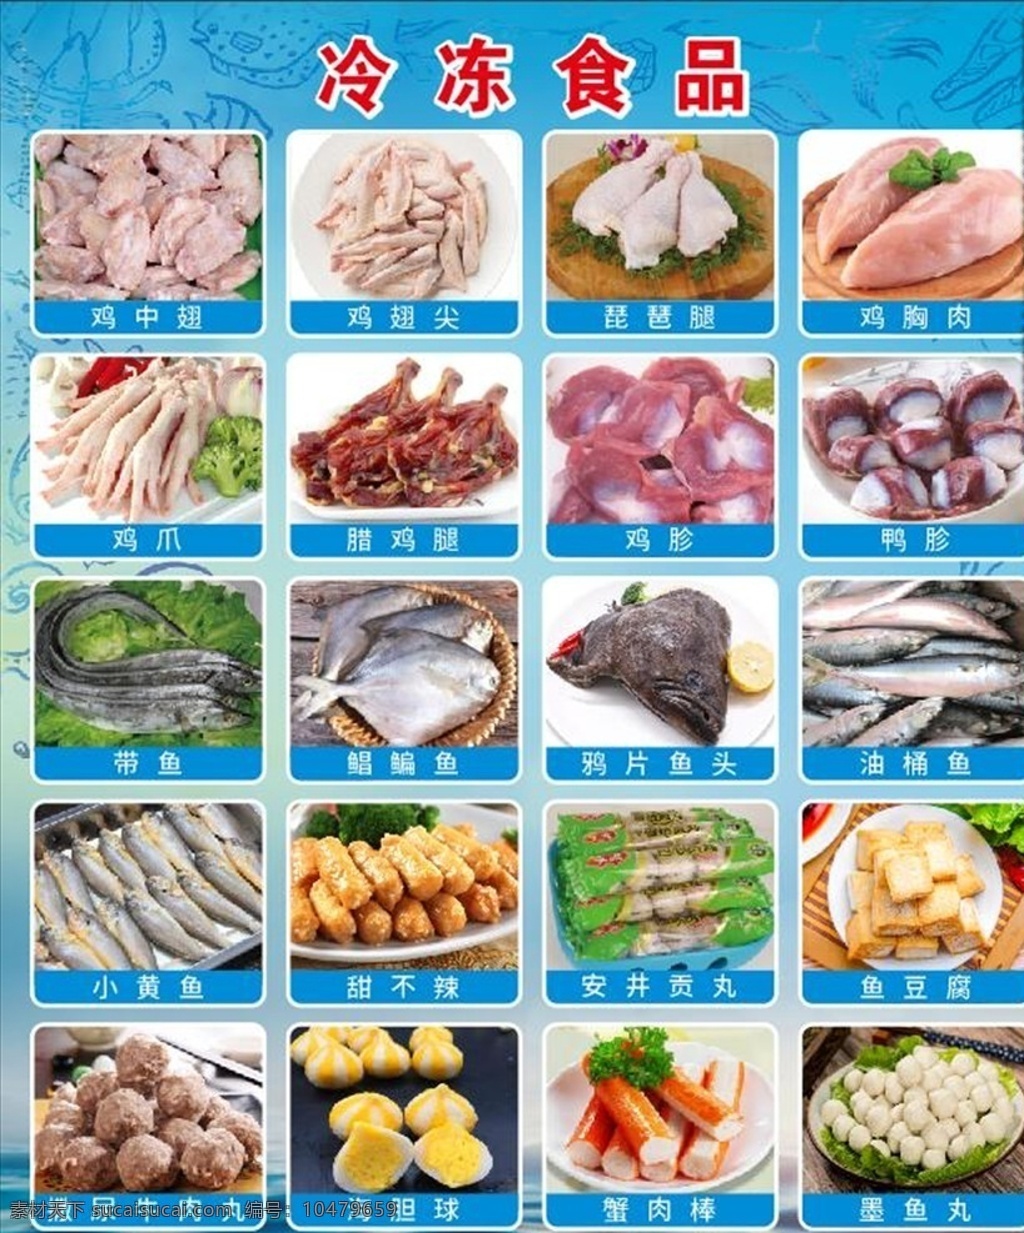 冷冻食品图片 冷冻食品 贡丸 鲳鳊鱼 鸡胗 鸡爪 鸡翅